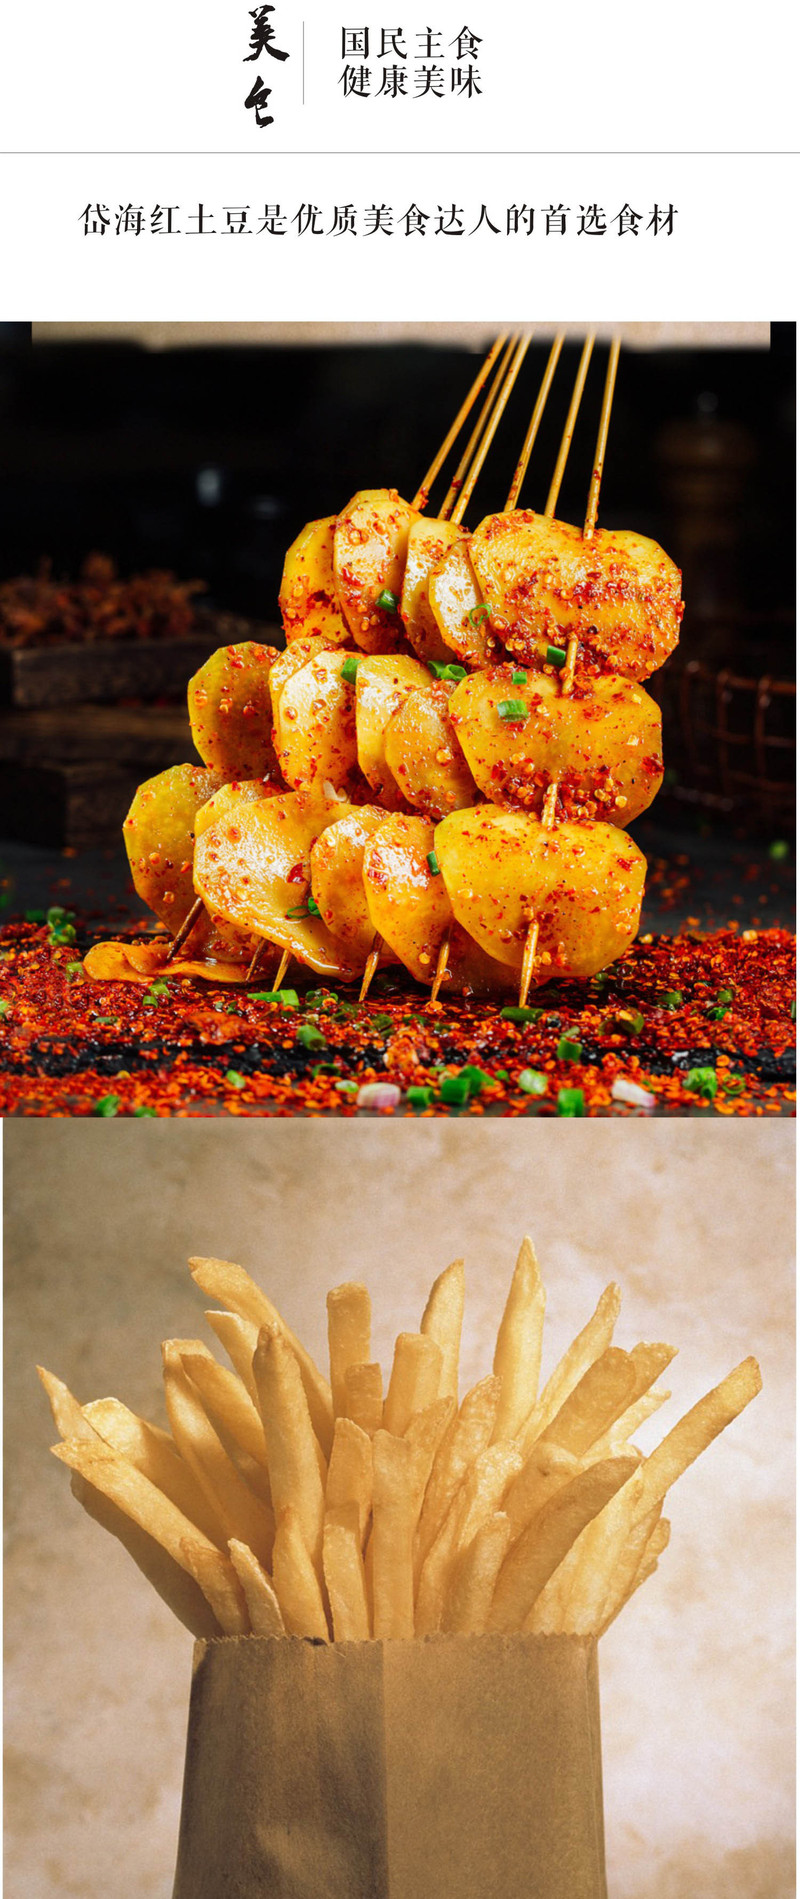 岱海 中国薯都内蒙古乌兰察布岱海红土豆5斤 产自中国薯都 富含花青素